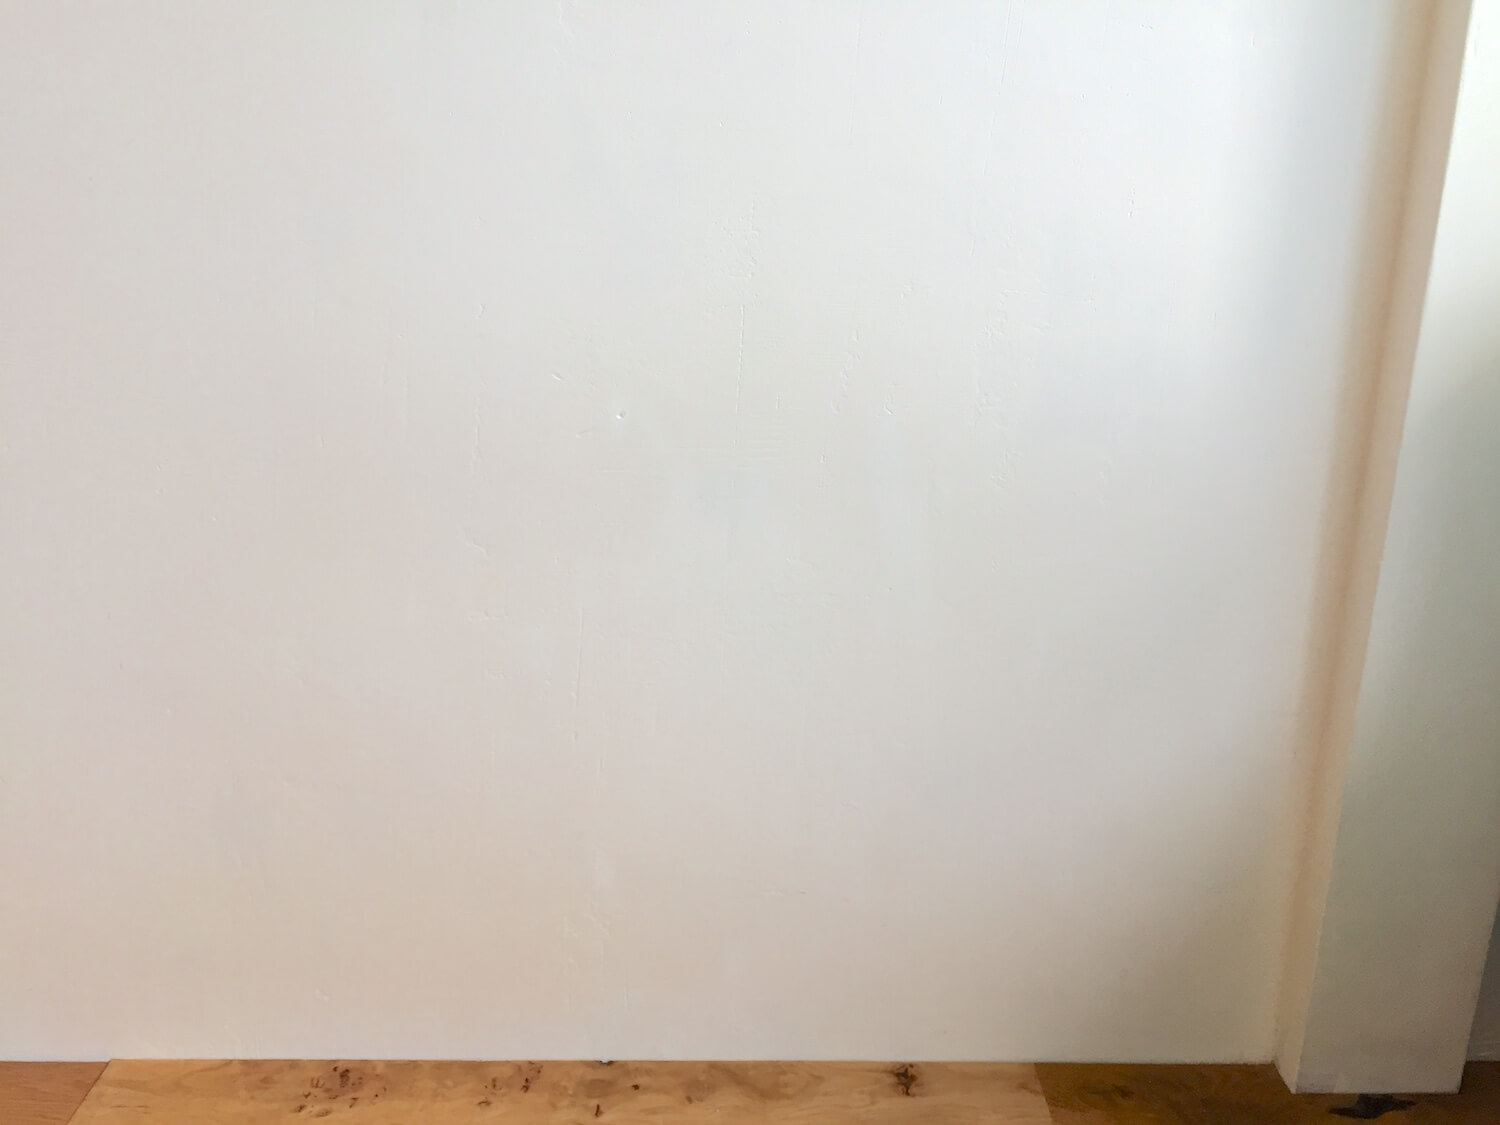 壁が汚れてもペンキ塗装仕上げならdiyで簡単補修 子供がクレヨンで落書きしたので塗り直しました 99 Diy Diyブログ